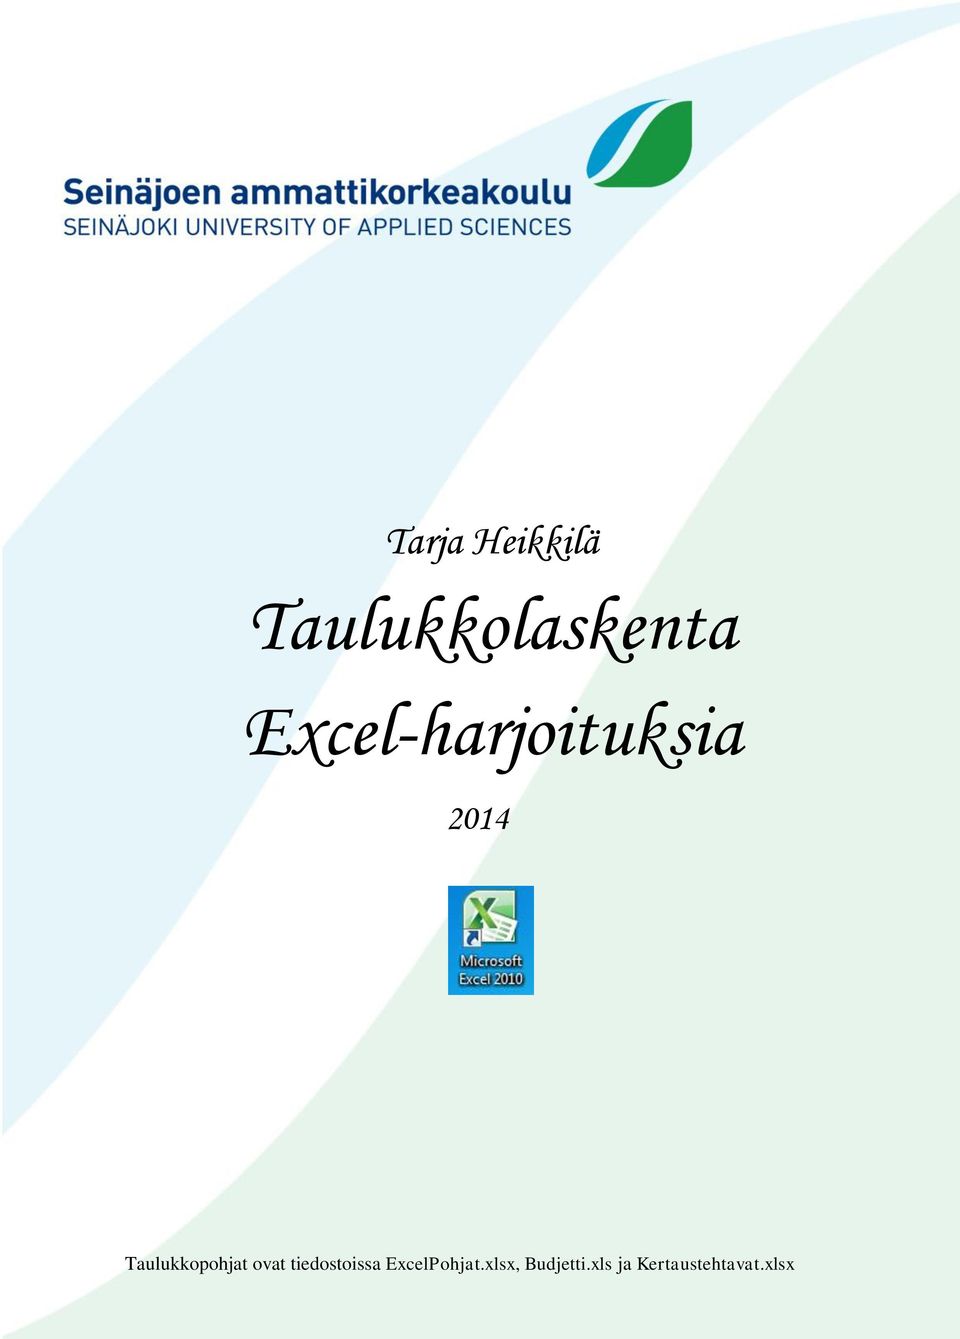 Tarja tiedostoissa Heikkilä ja Edita ExcelPohjat.